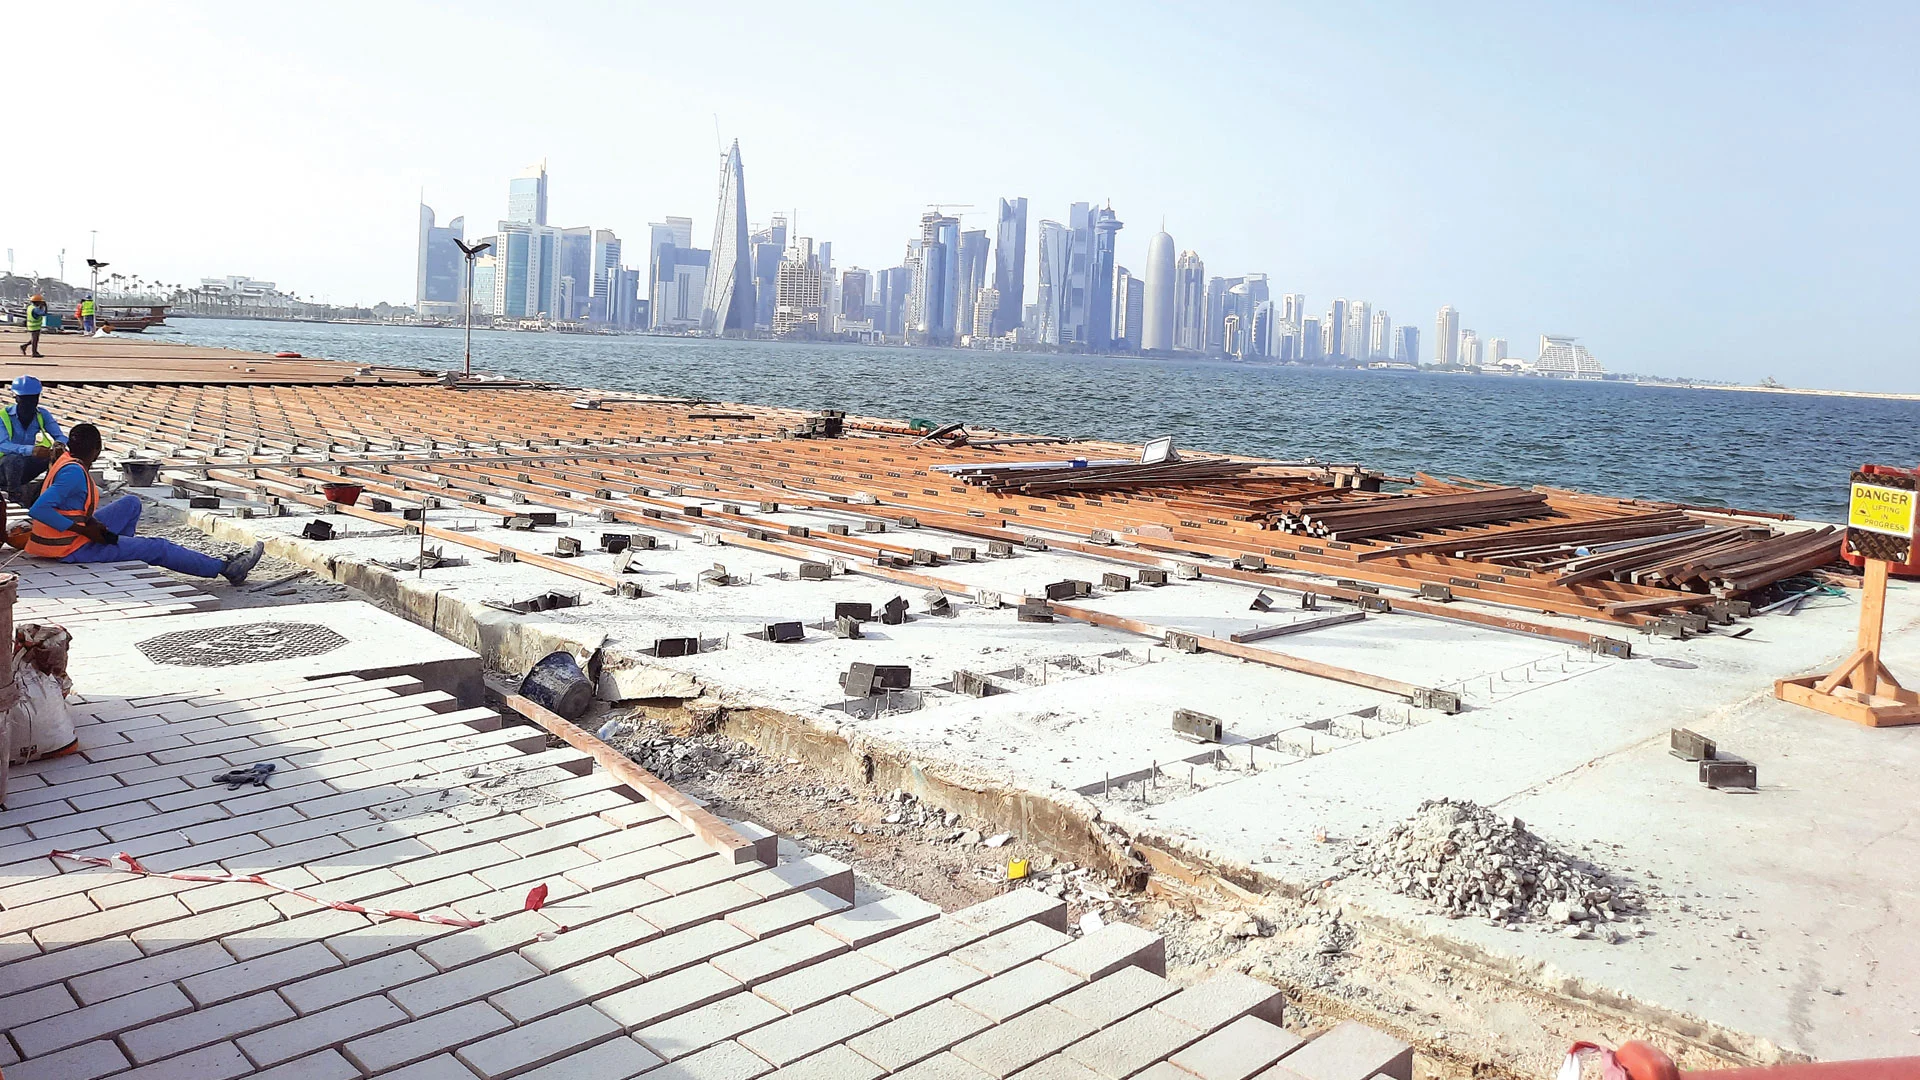 The Corniche Boat Marina project continues